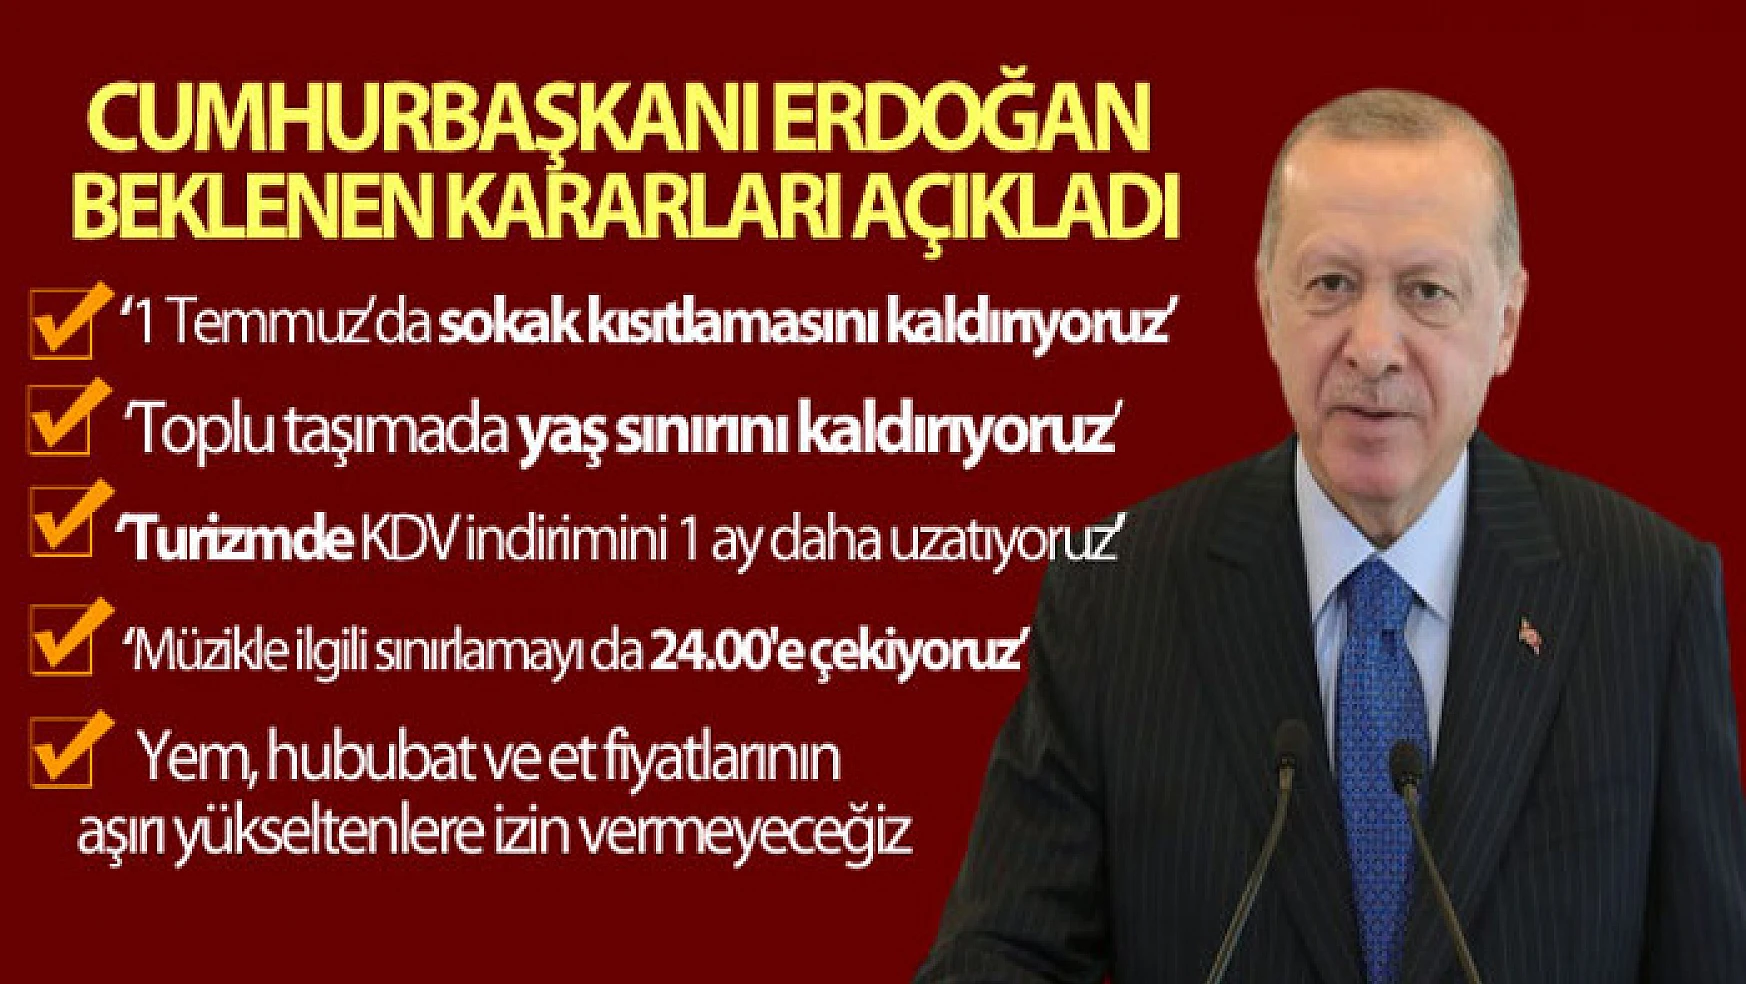 Cumhurbaşkanı Erdoğan: '1 Temmuz itibariyle sokağa çıkma kısıtlamasını kaldırıyoruz'